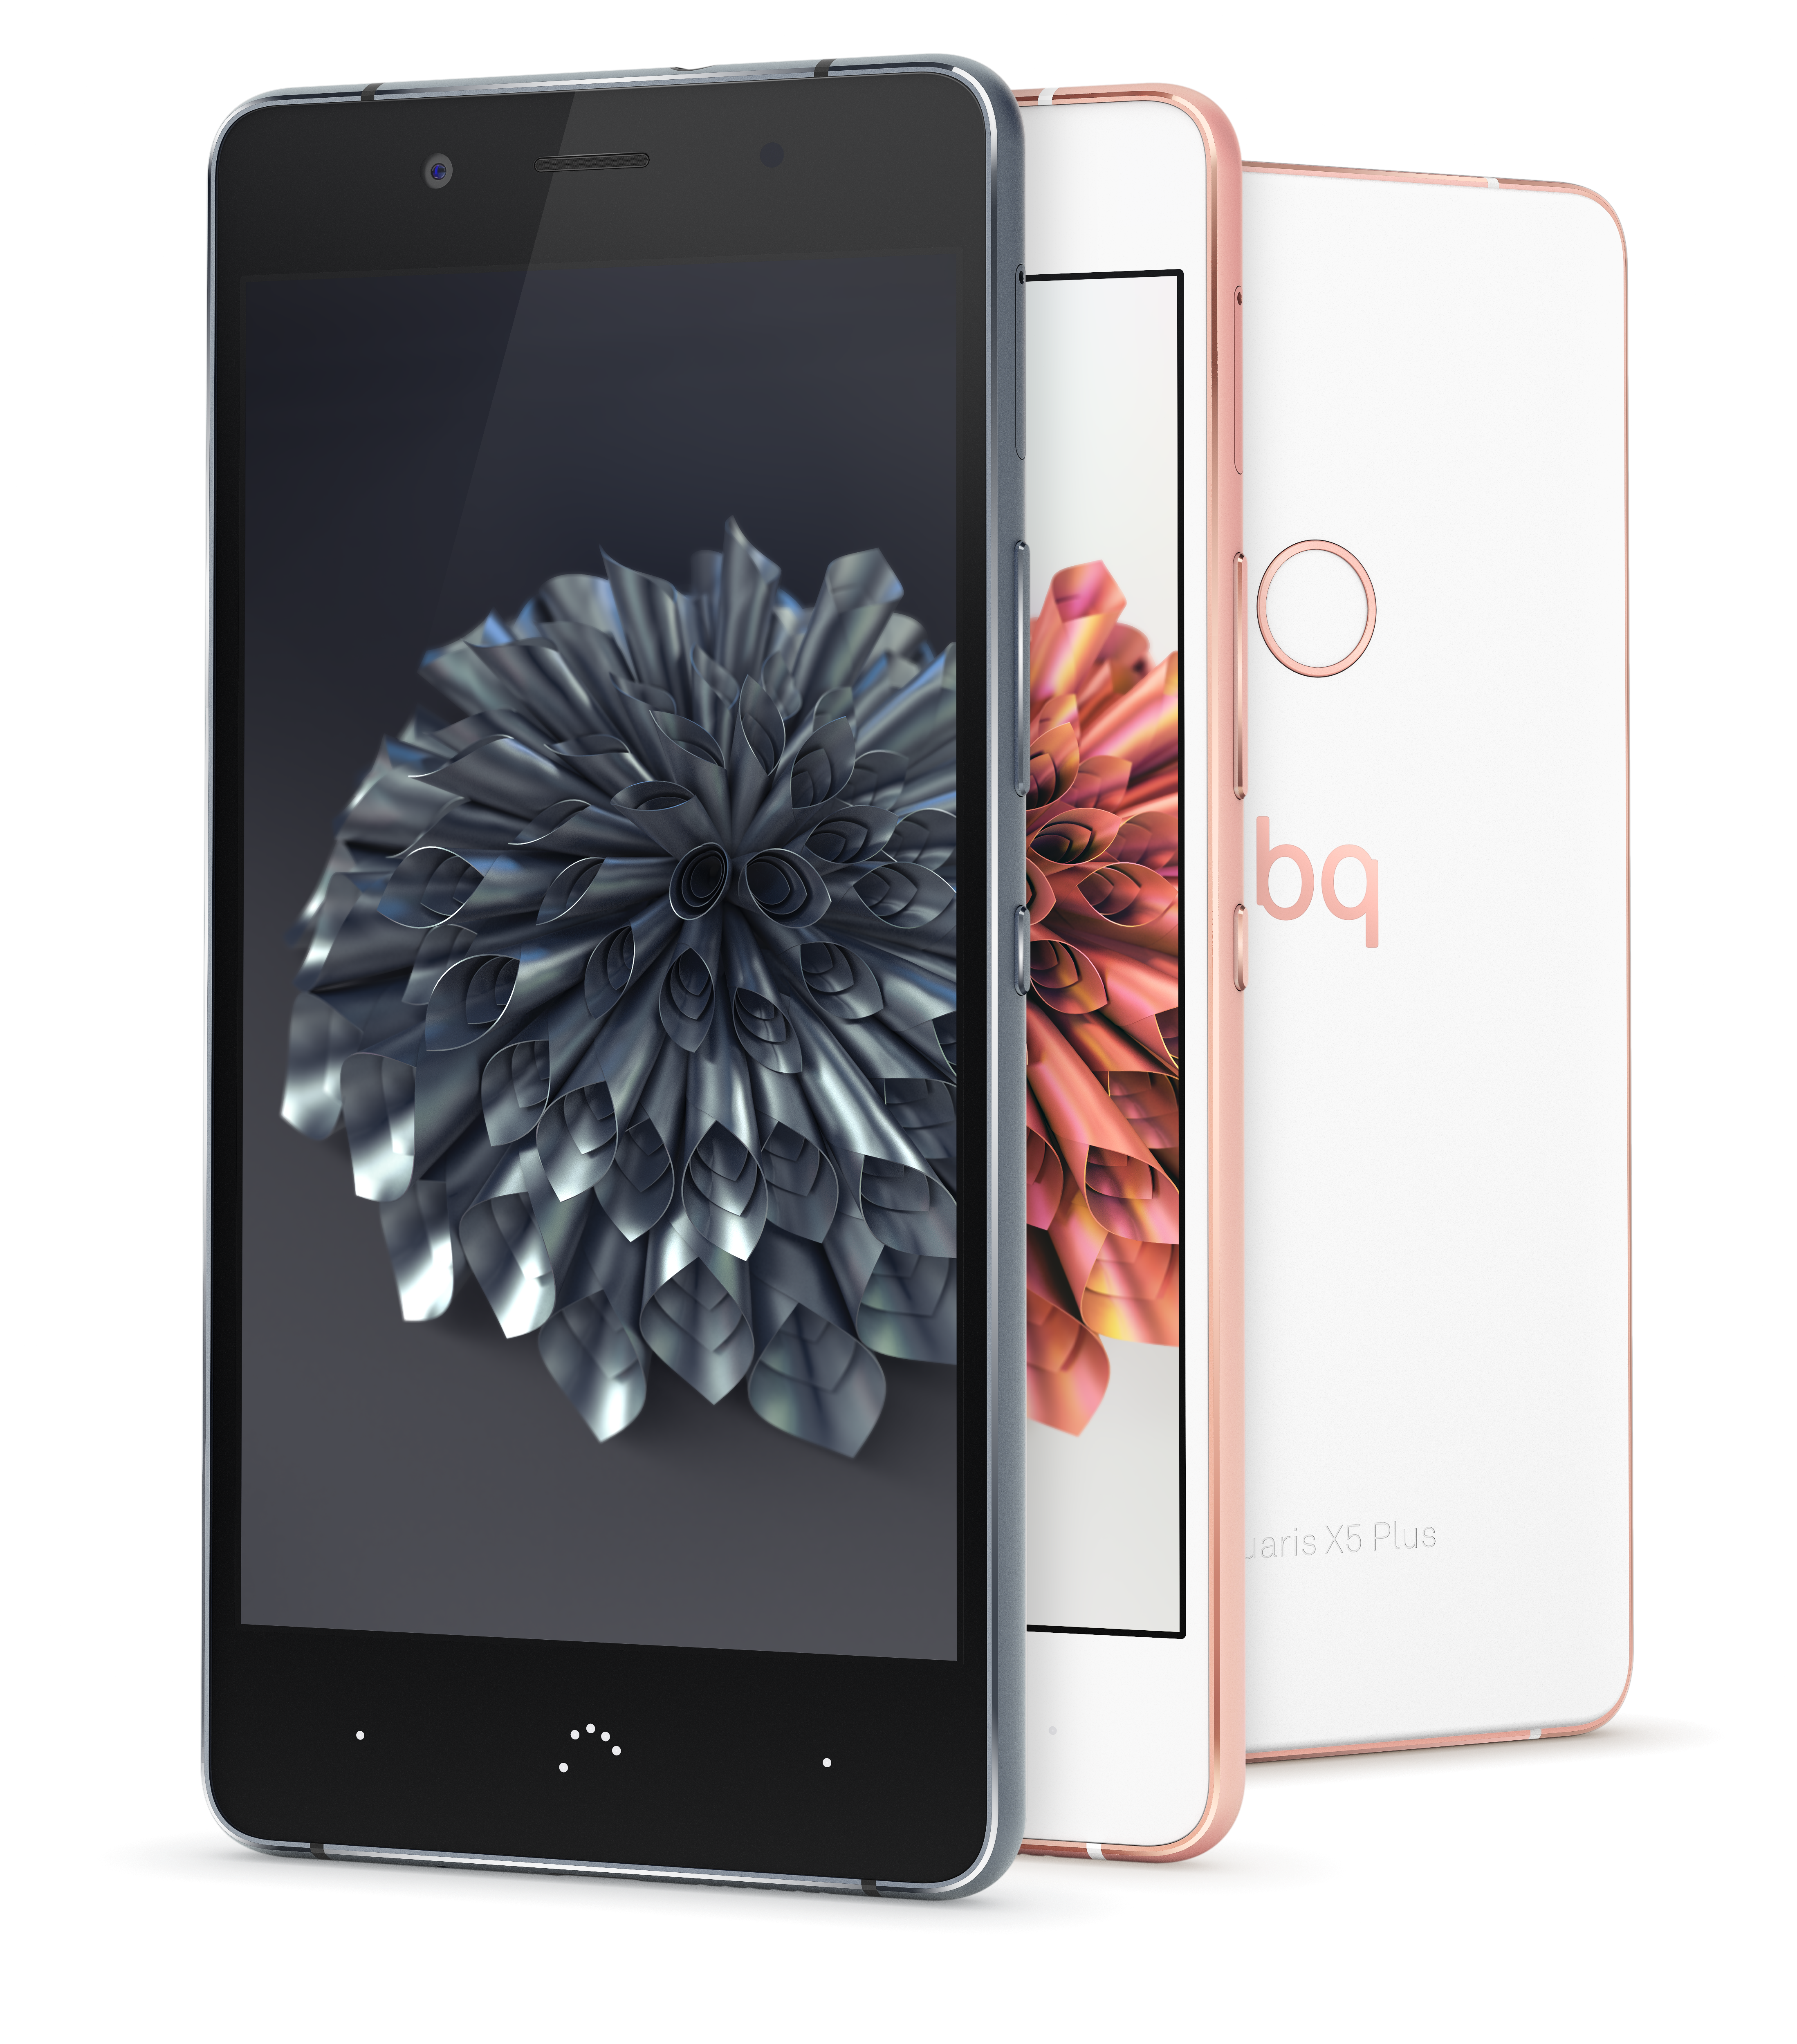 Das neue BQ Aquaris X5 Plus Smartphone ist ab 11. August 2016 erhältlich